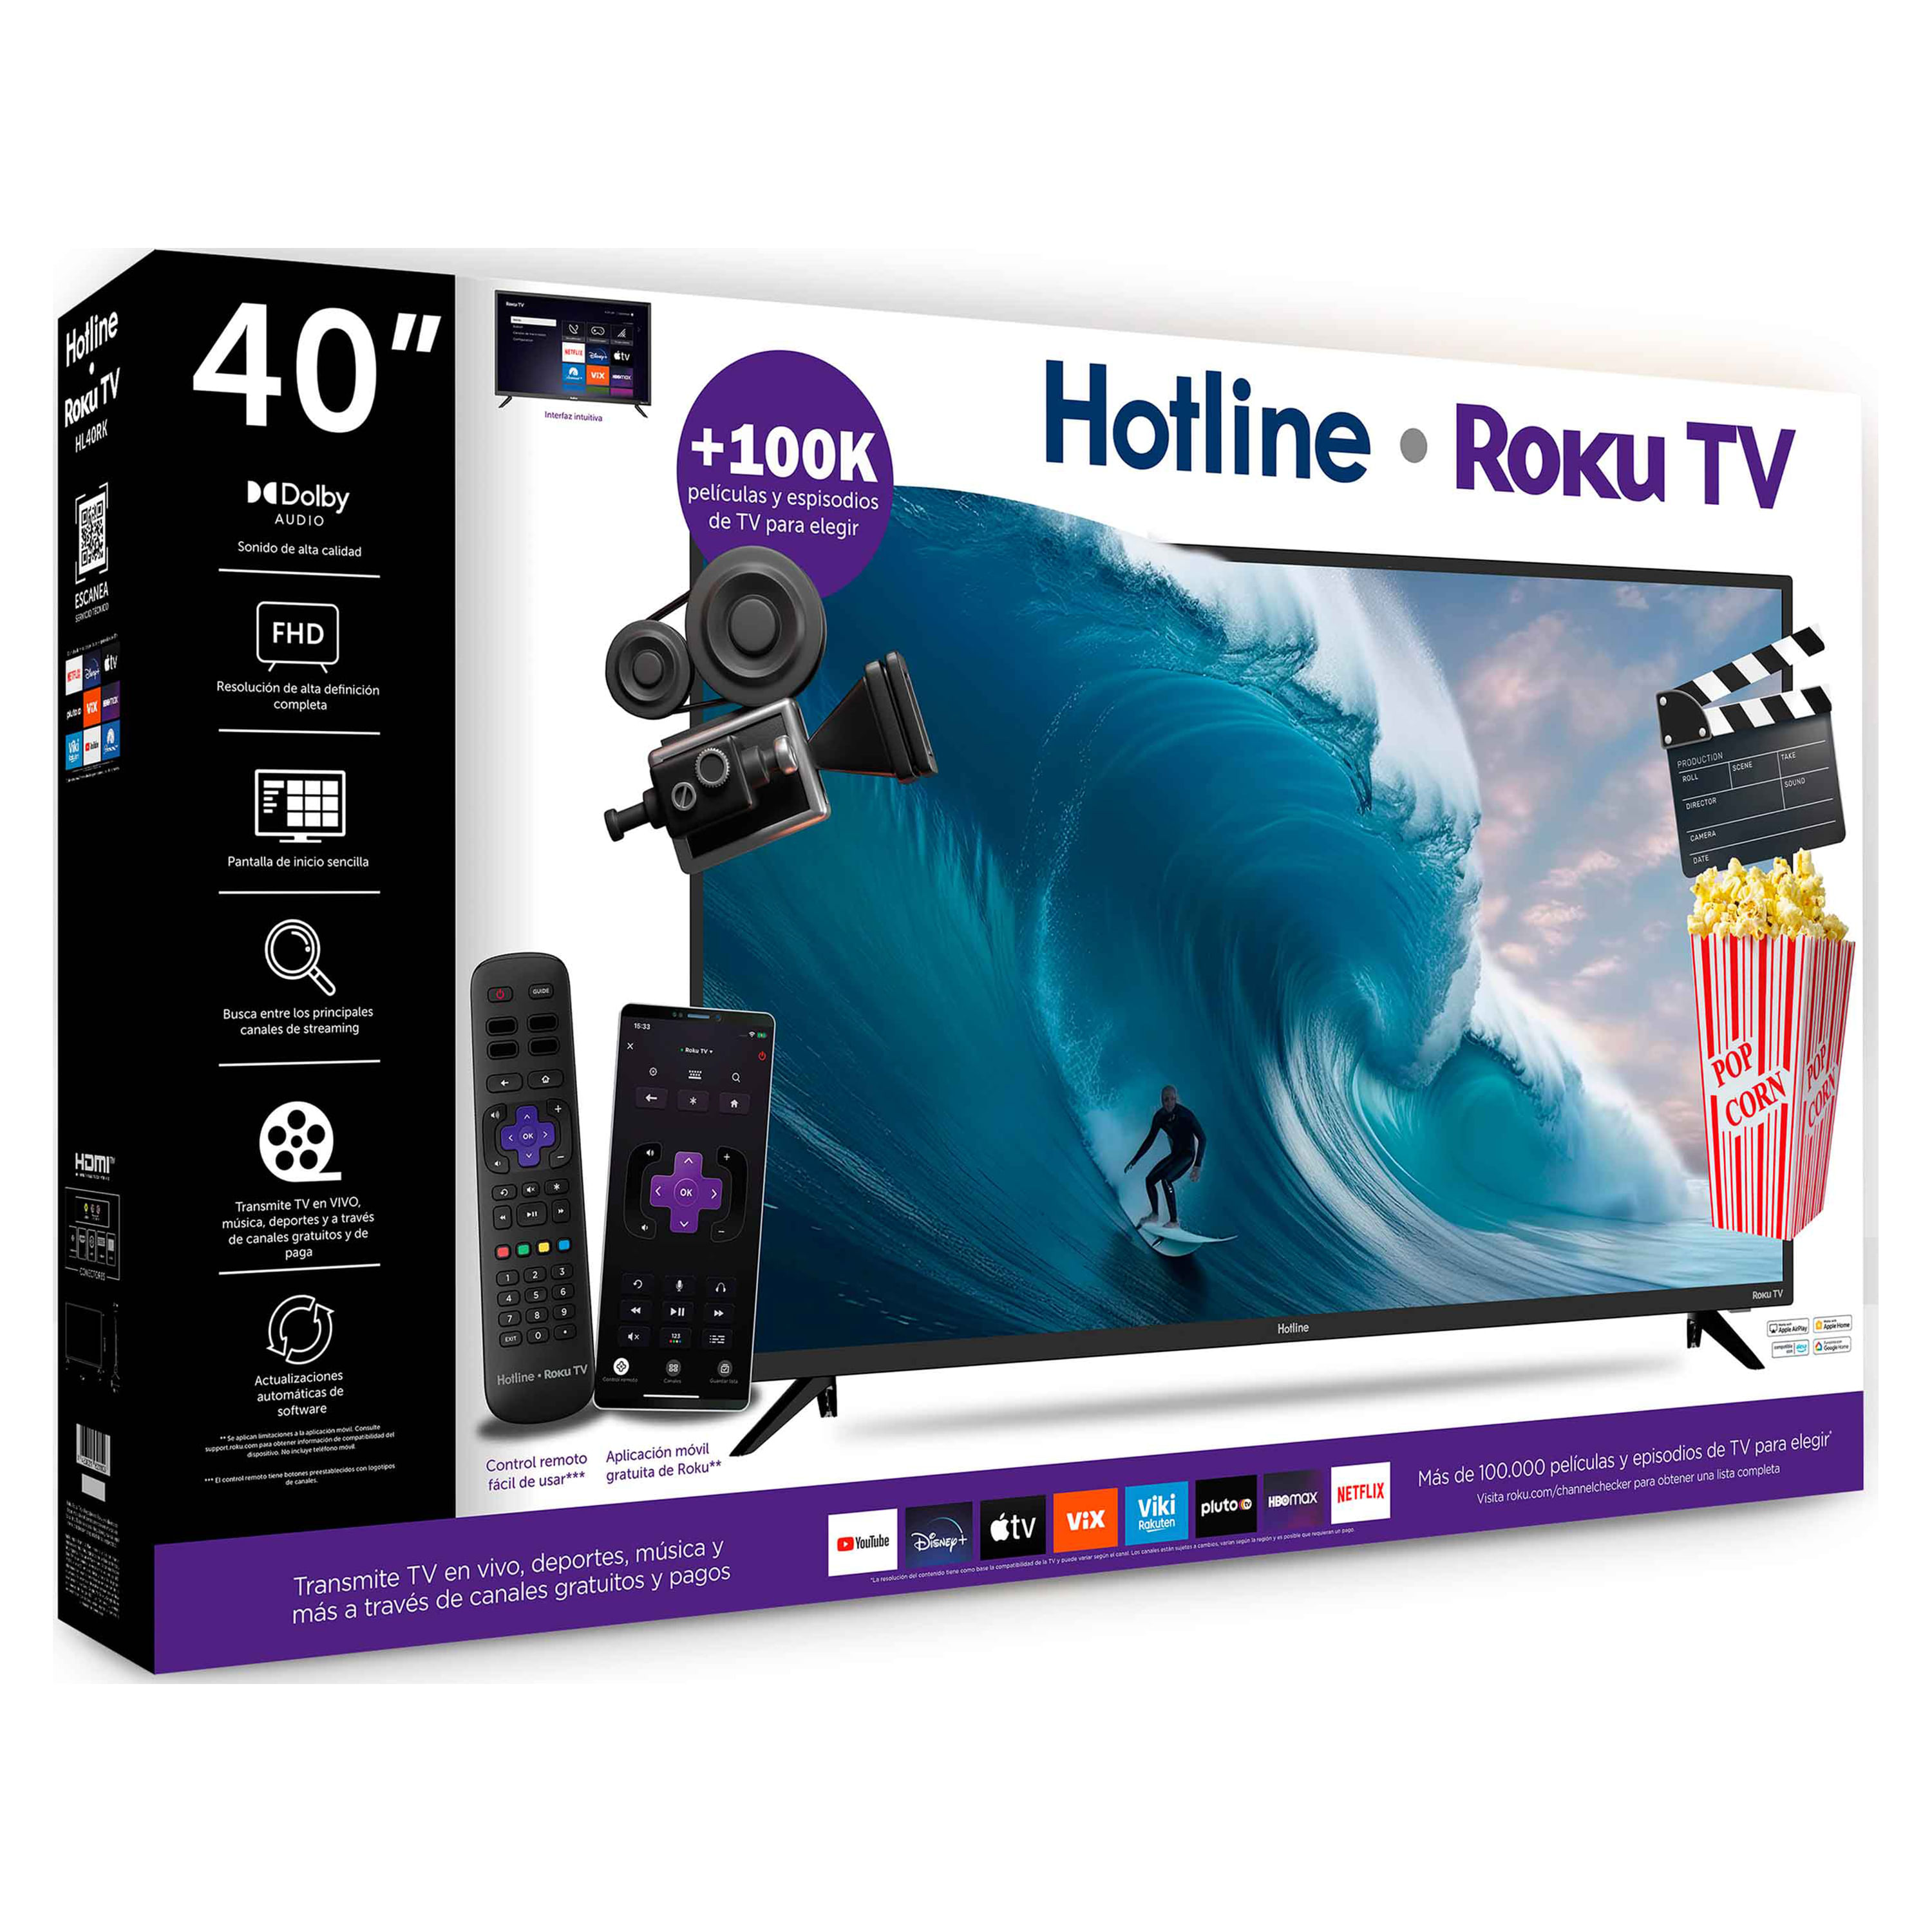 Comprar Televisor Hotline smart TV, Roku, HL40RK -40 pulgadas